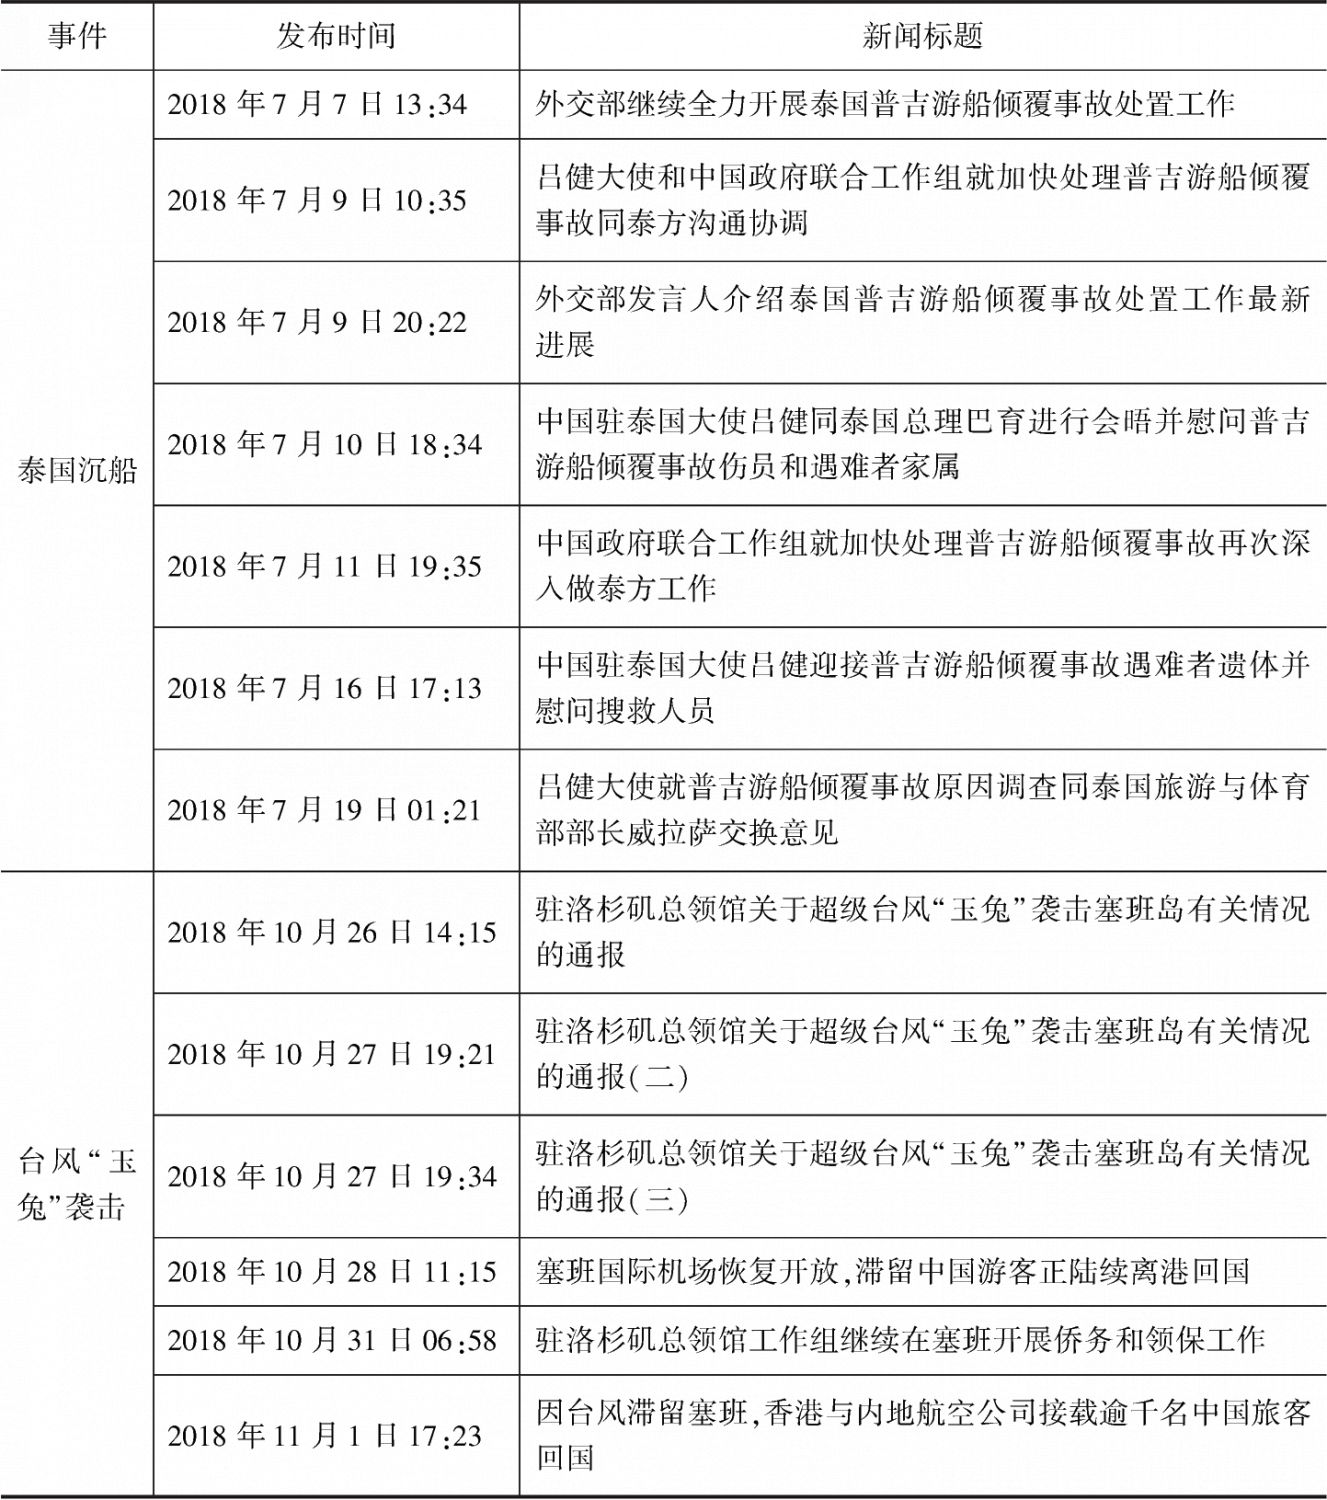 表3 中国领事服务网关于重大领事保护案件处置的报道情况